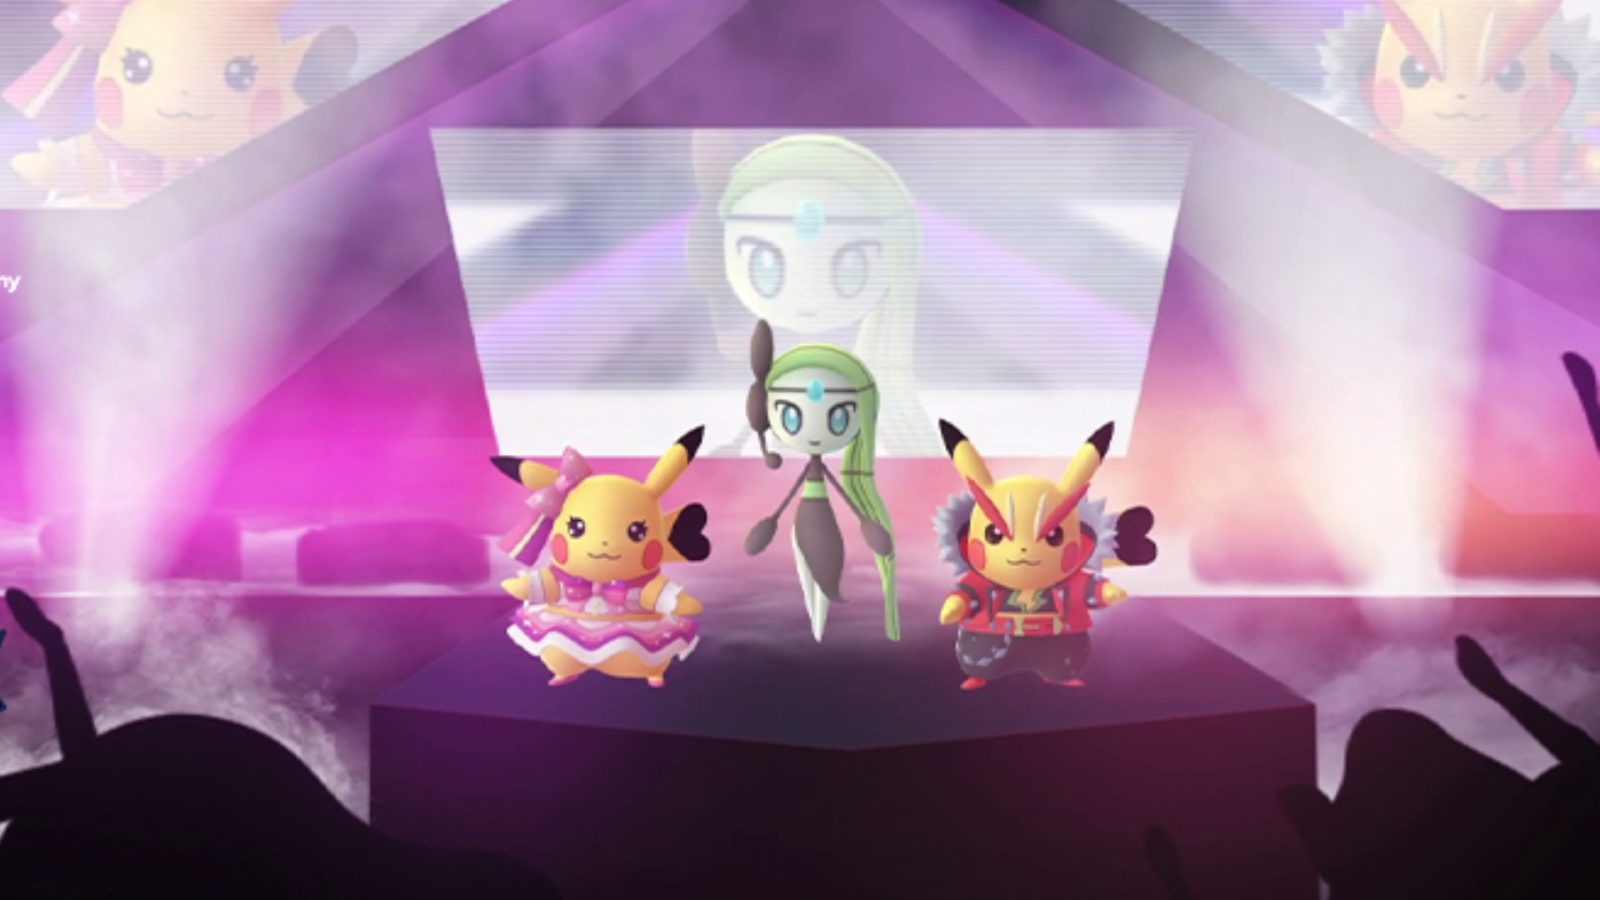 Shiny Mimikyu Event was announced in - Pokémon Global News